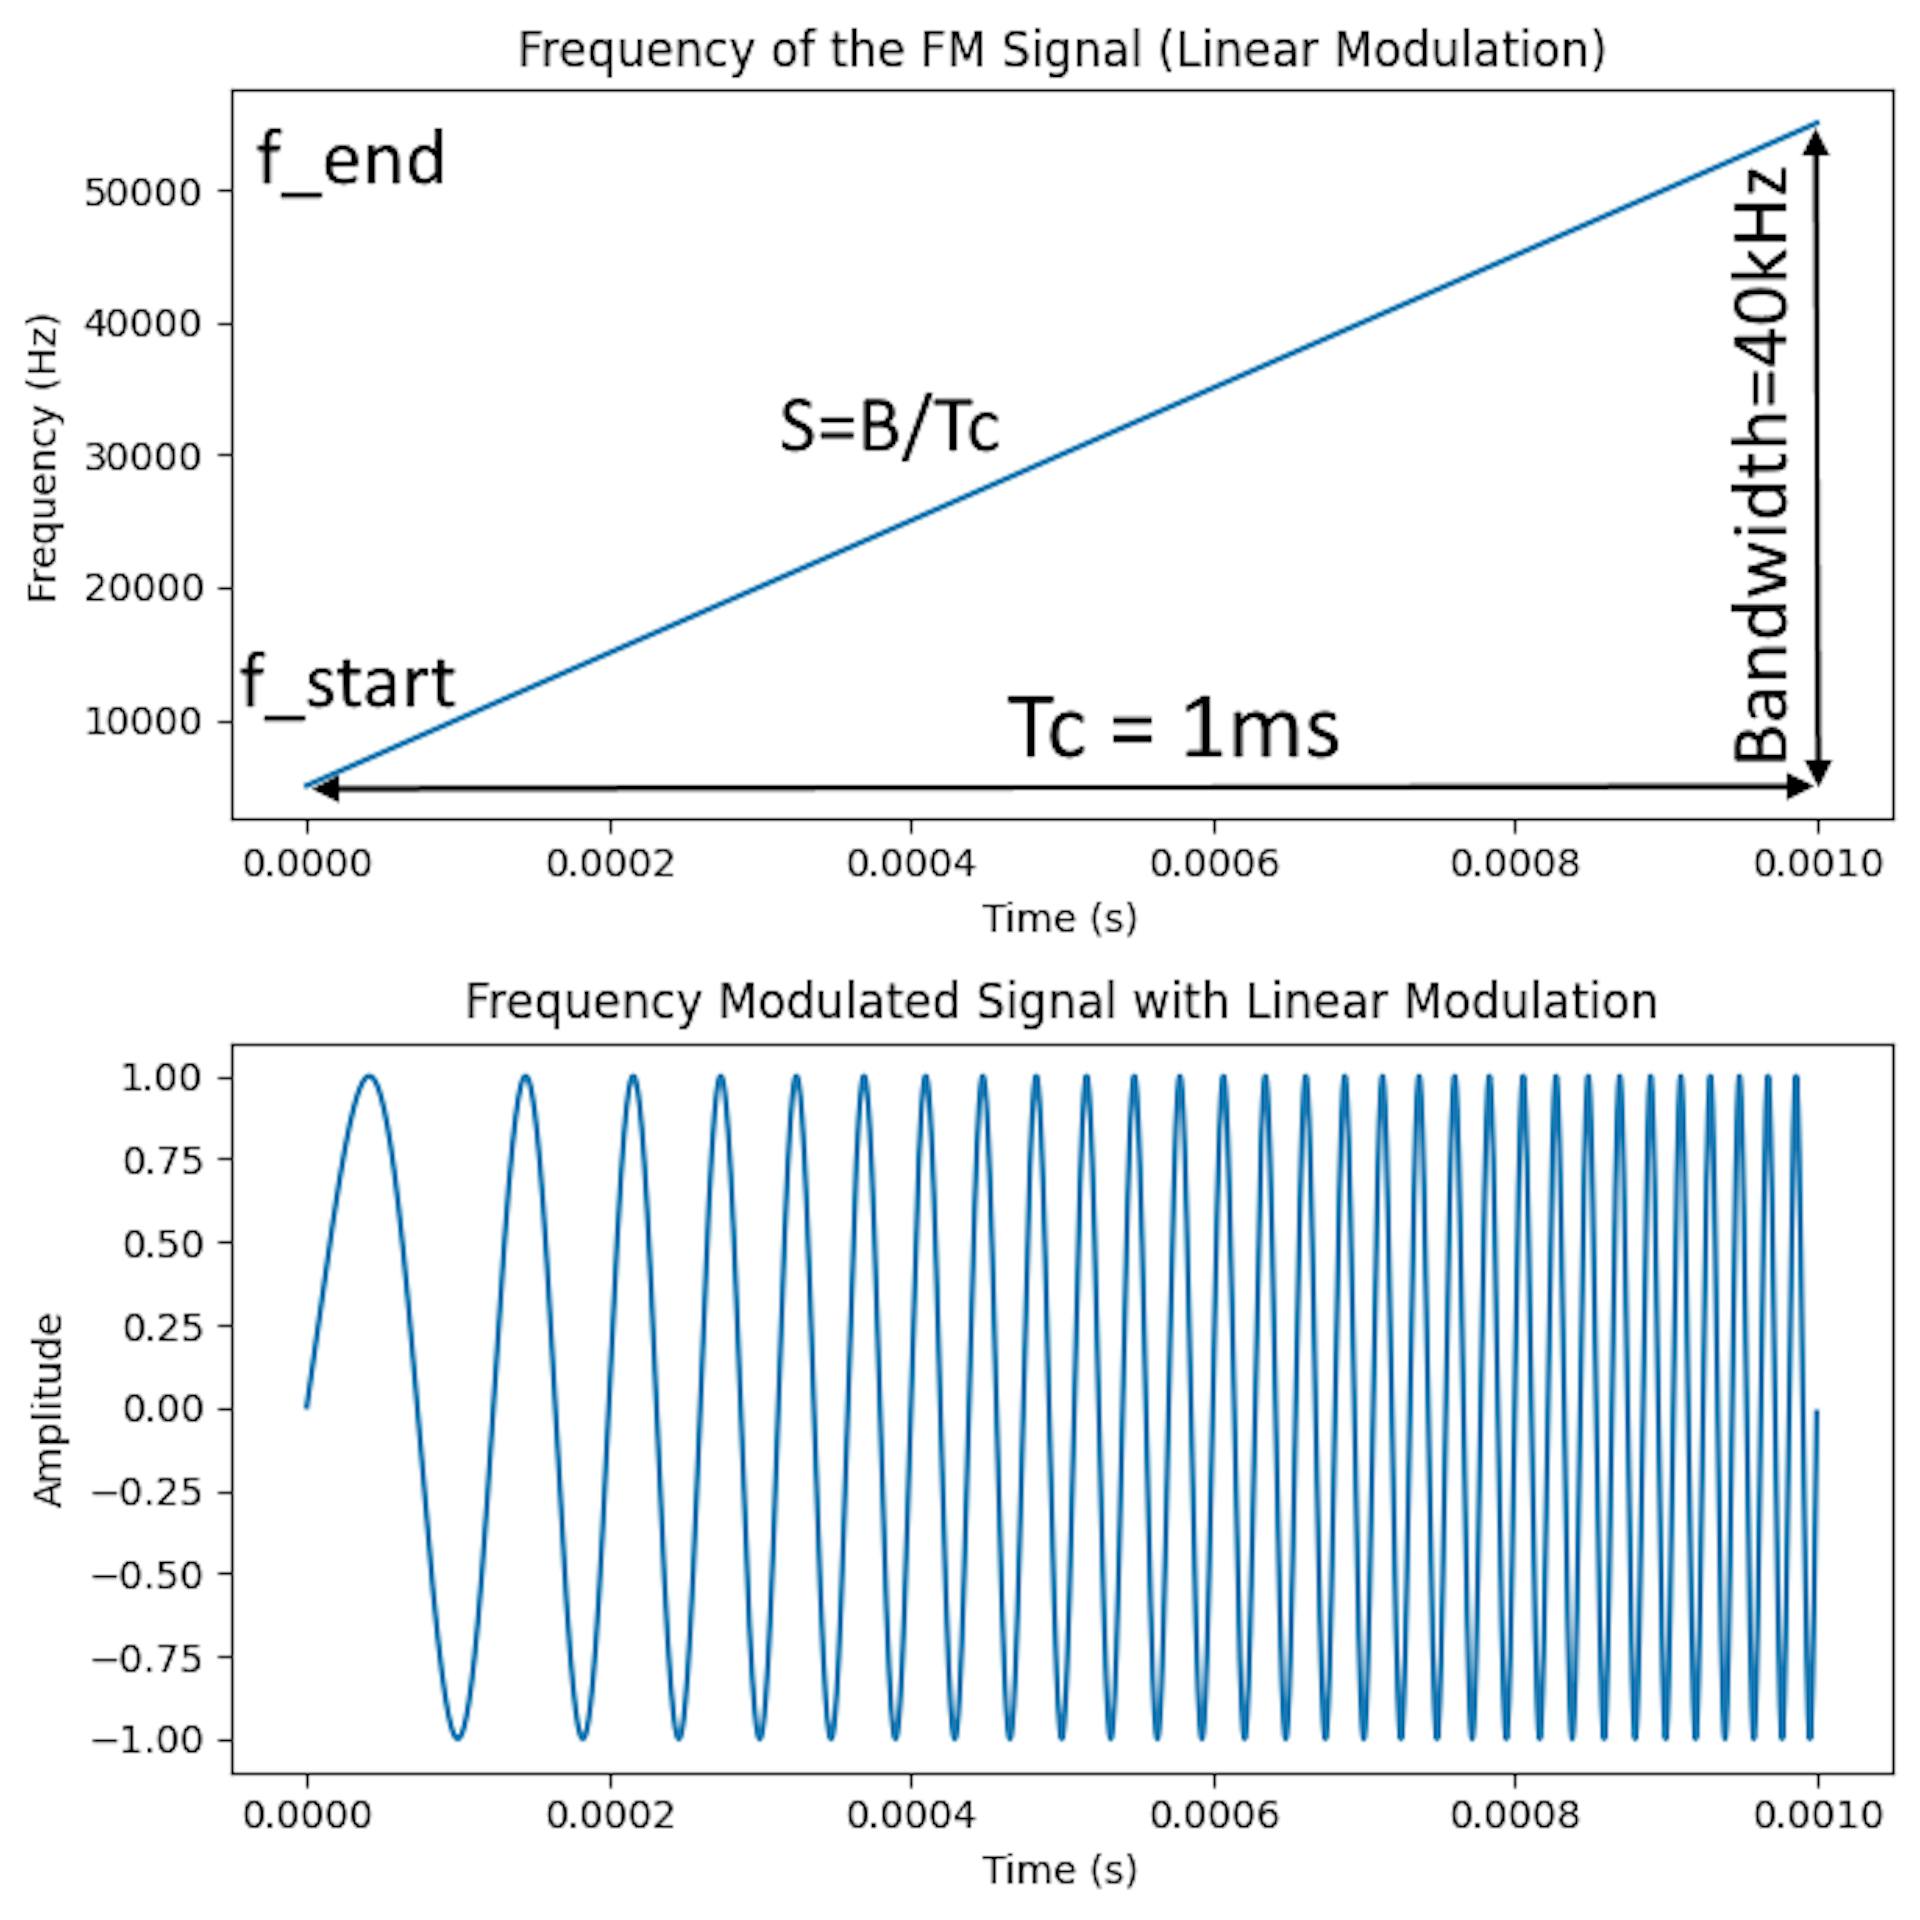 Do início ao fim do chirp, a frequência das ondas de rádio é modulada (alterada) de acordo com uma lei linear pré-determinada, como na primeira figura. A segunda figura mostra um exemplo de um sinal sonoro de 1 ms de duração.